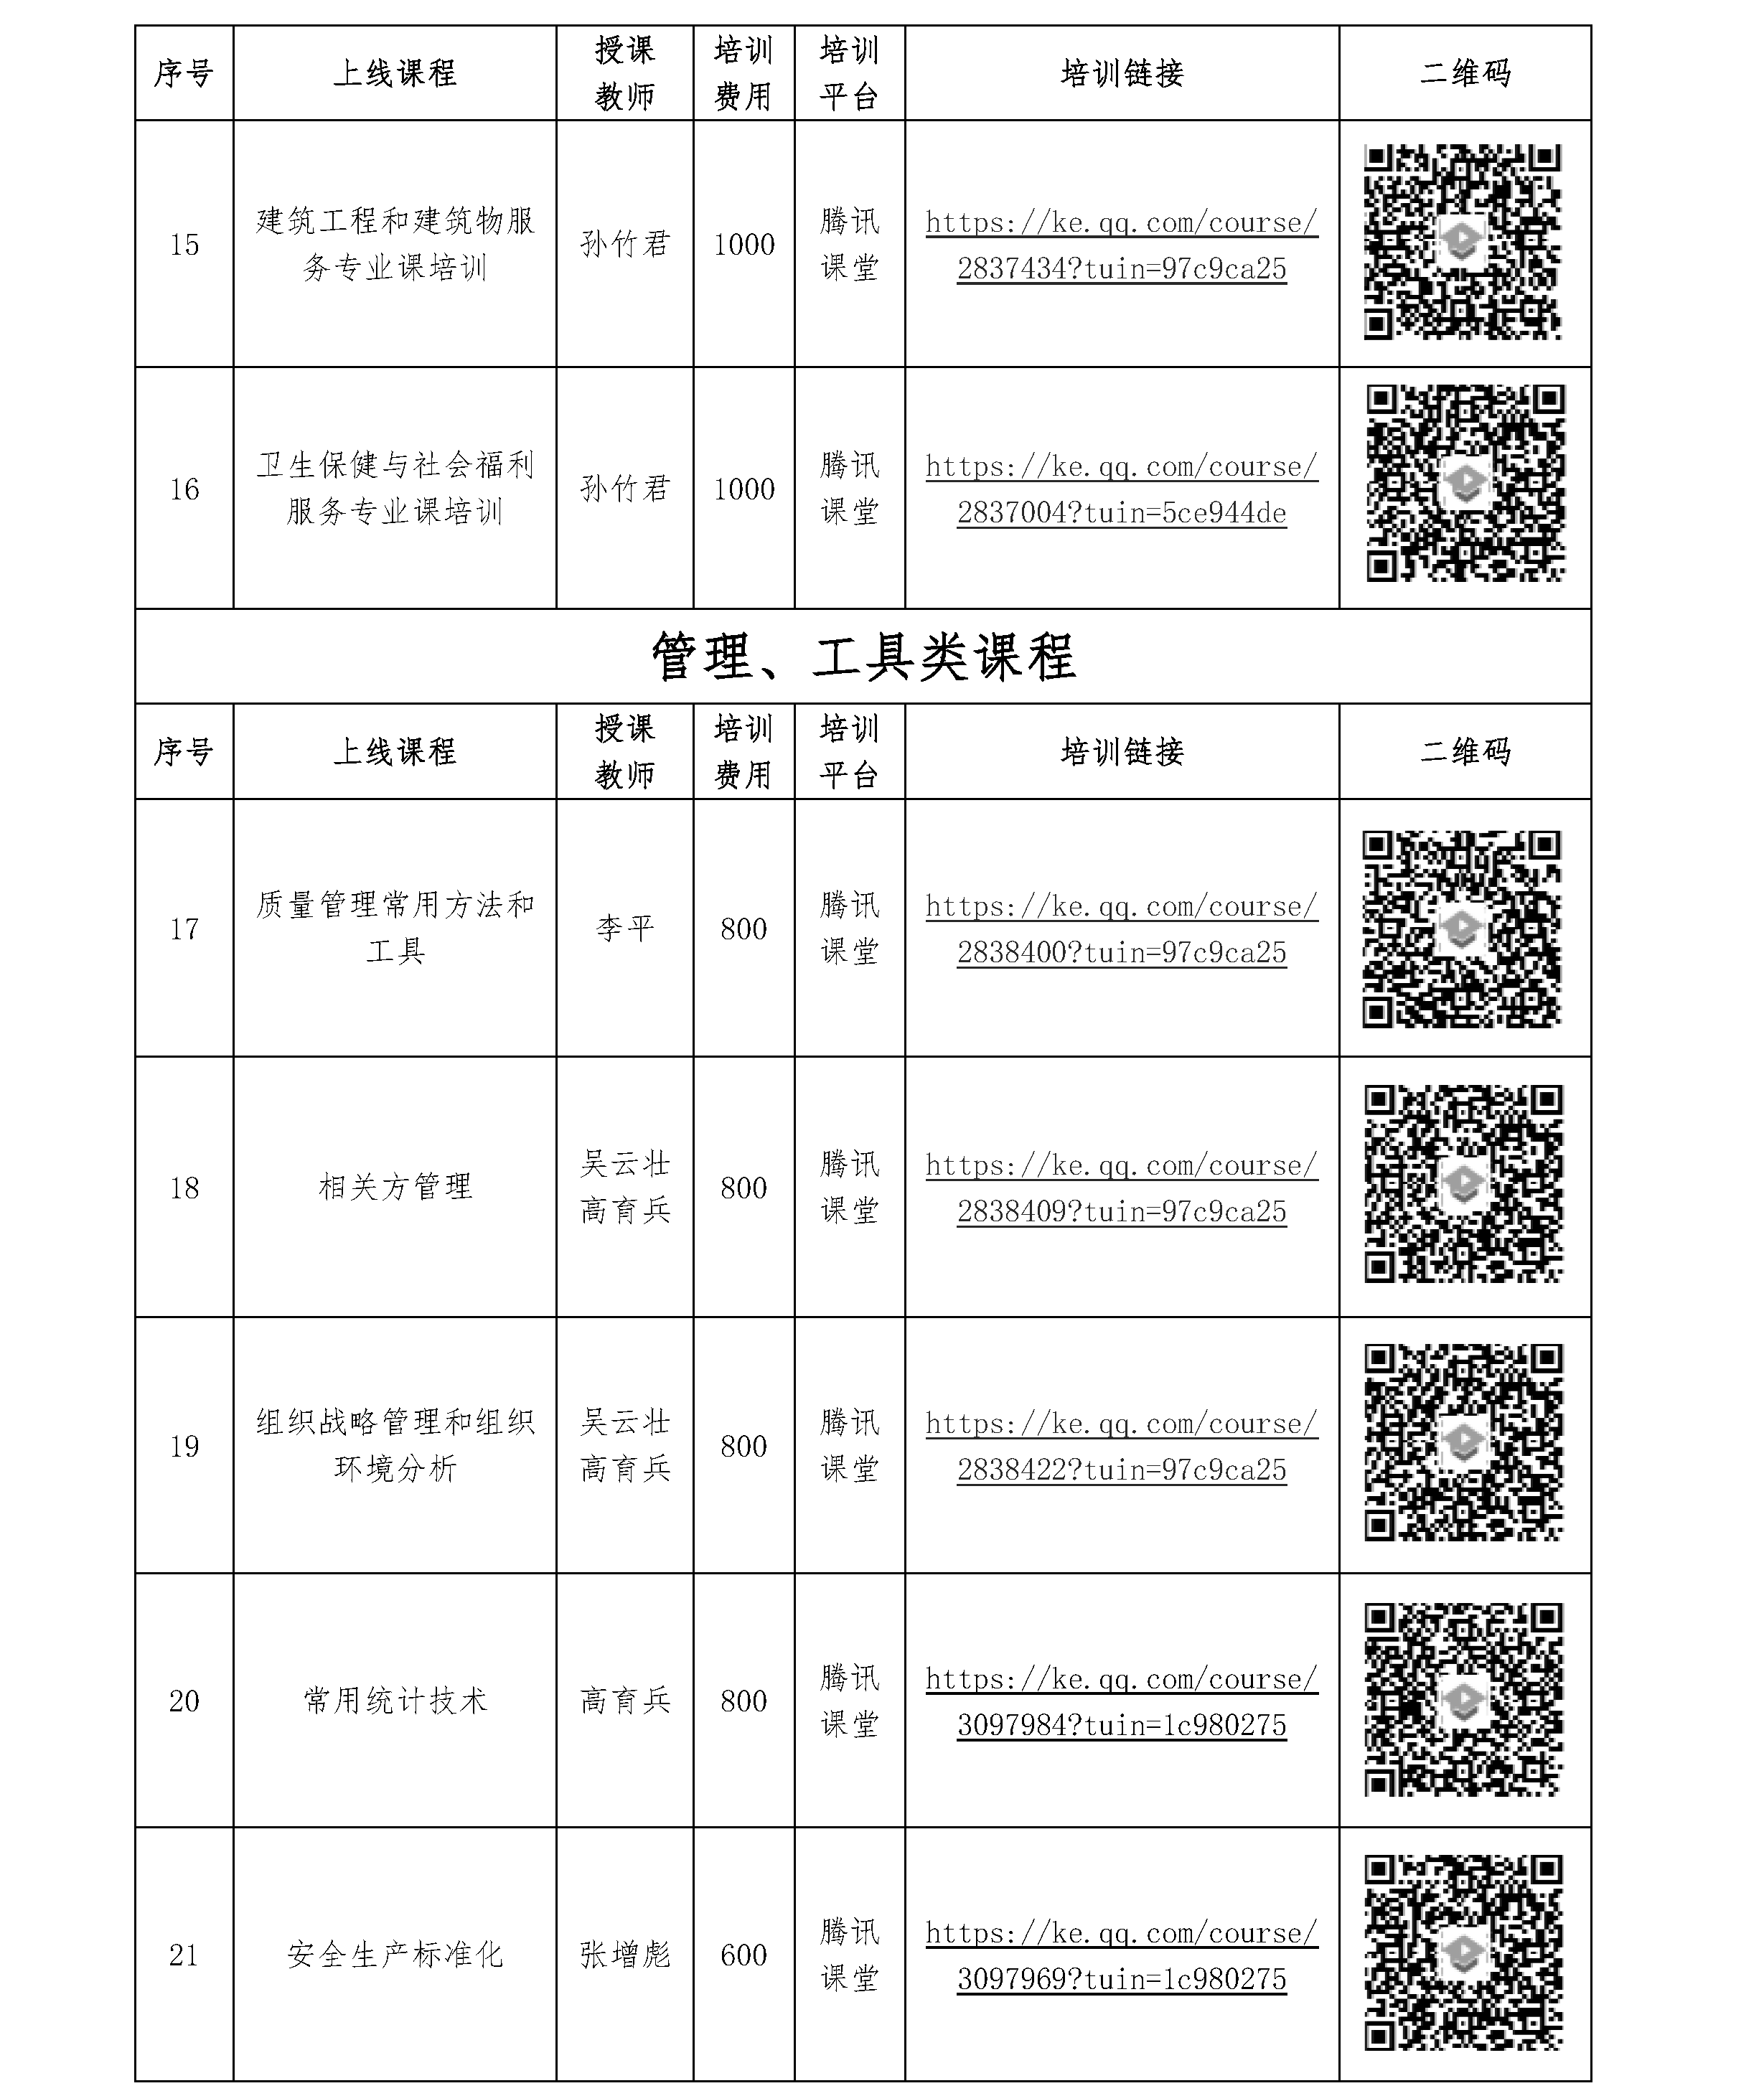 北京世标认证中心有限公司/国培认证培训（北京）中心 2021年一季度培训课程 (图3)